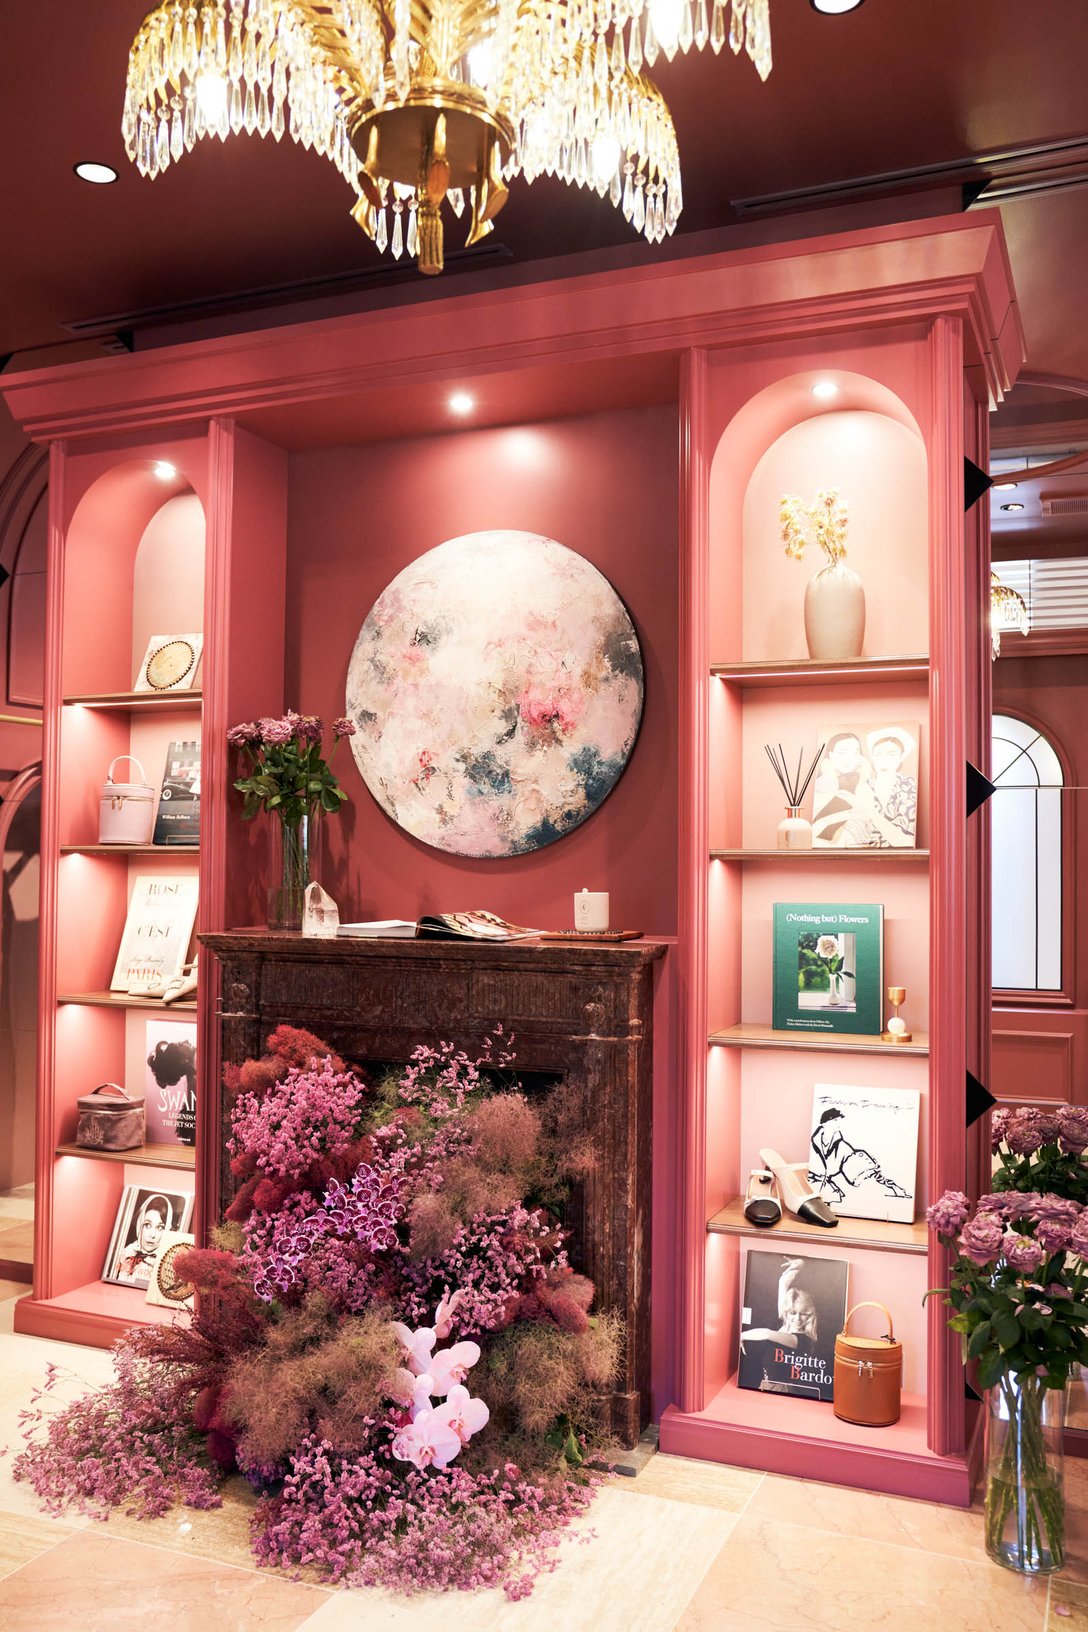 スイートルームはピンクで装飾 Image by ハート リレーション